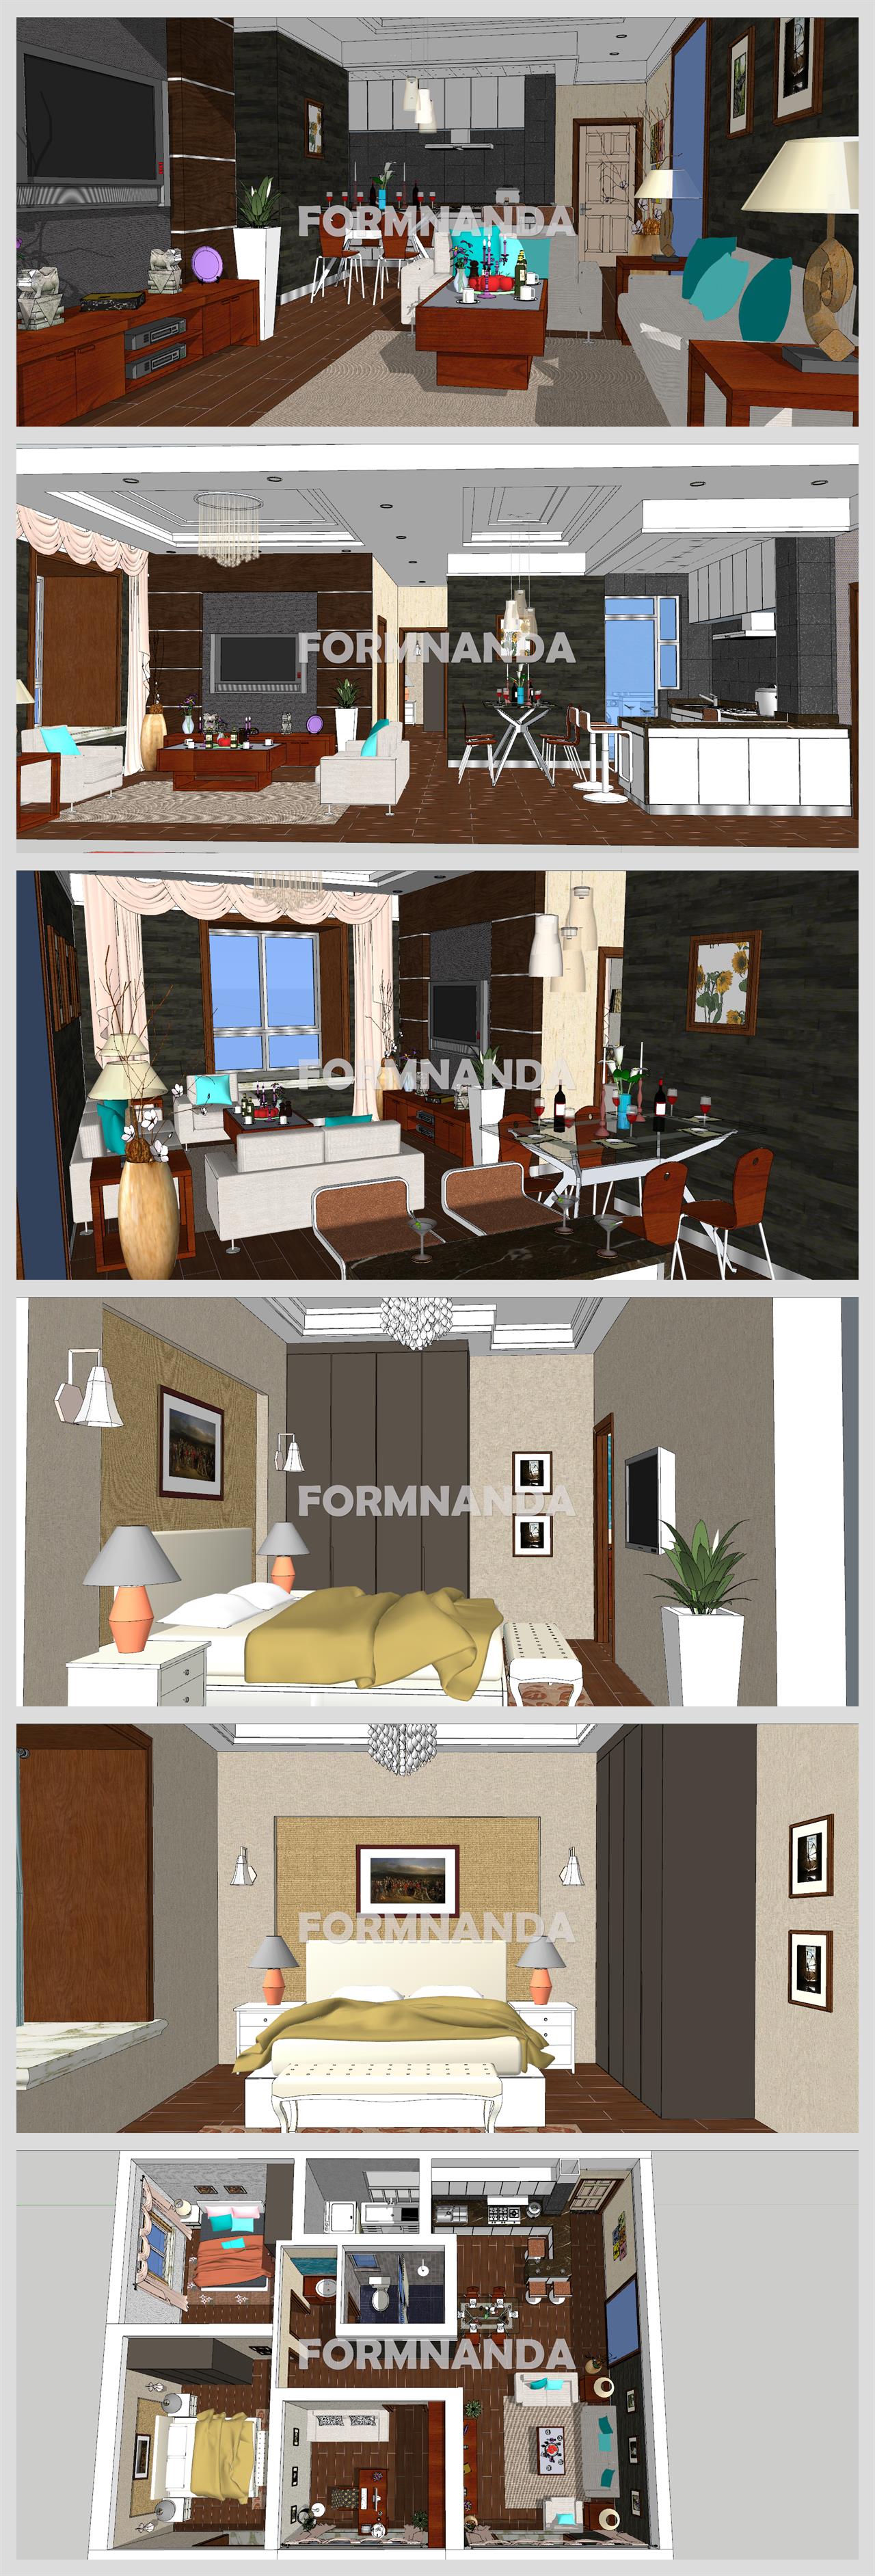 현대적인 거실 디자인 웹툰배경 모델 사이트 상세보기